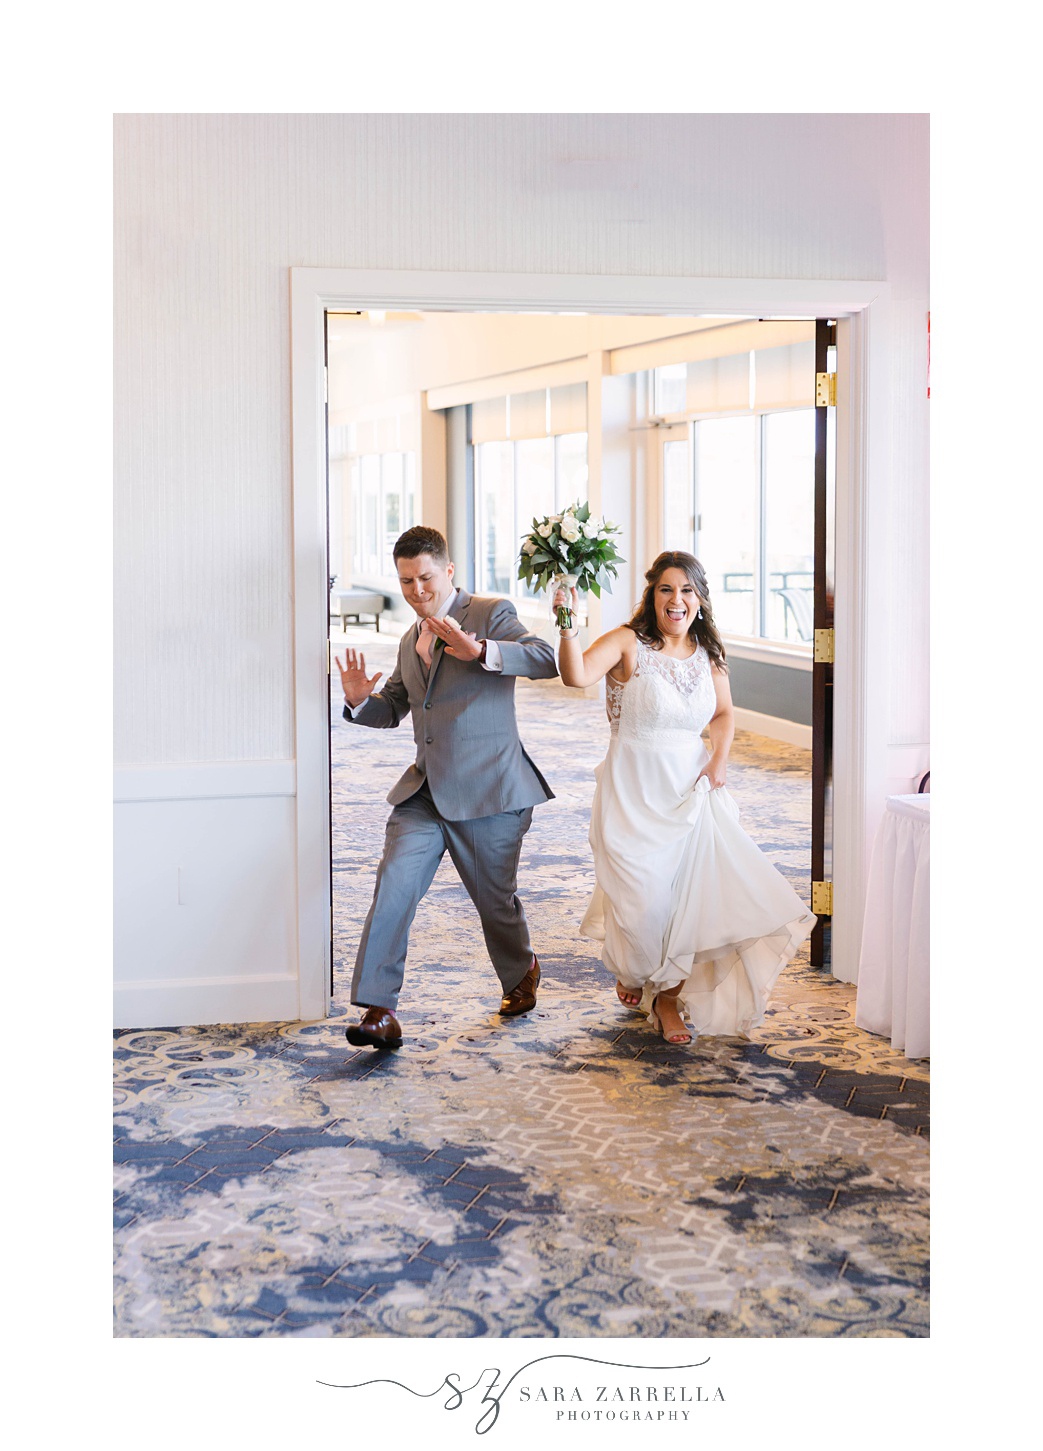 newlyweds enter Rhode Island wedding reception